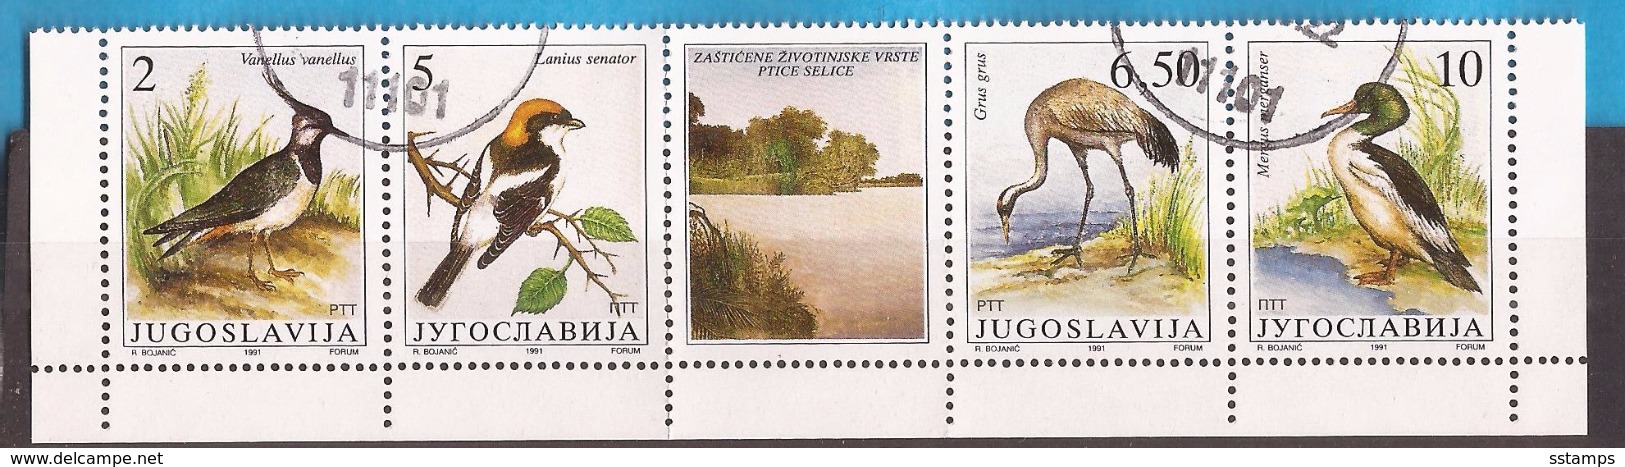 1991  246366  FAUNA WWF  JUGOSLAWIEN  VOEGEL  BIRDS  GESCHUEZTE TIERE  USED - Used Stamps